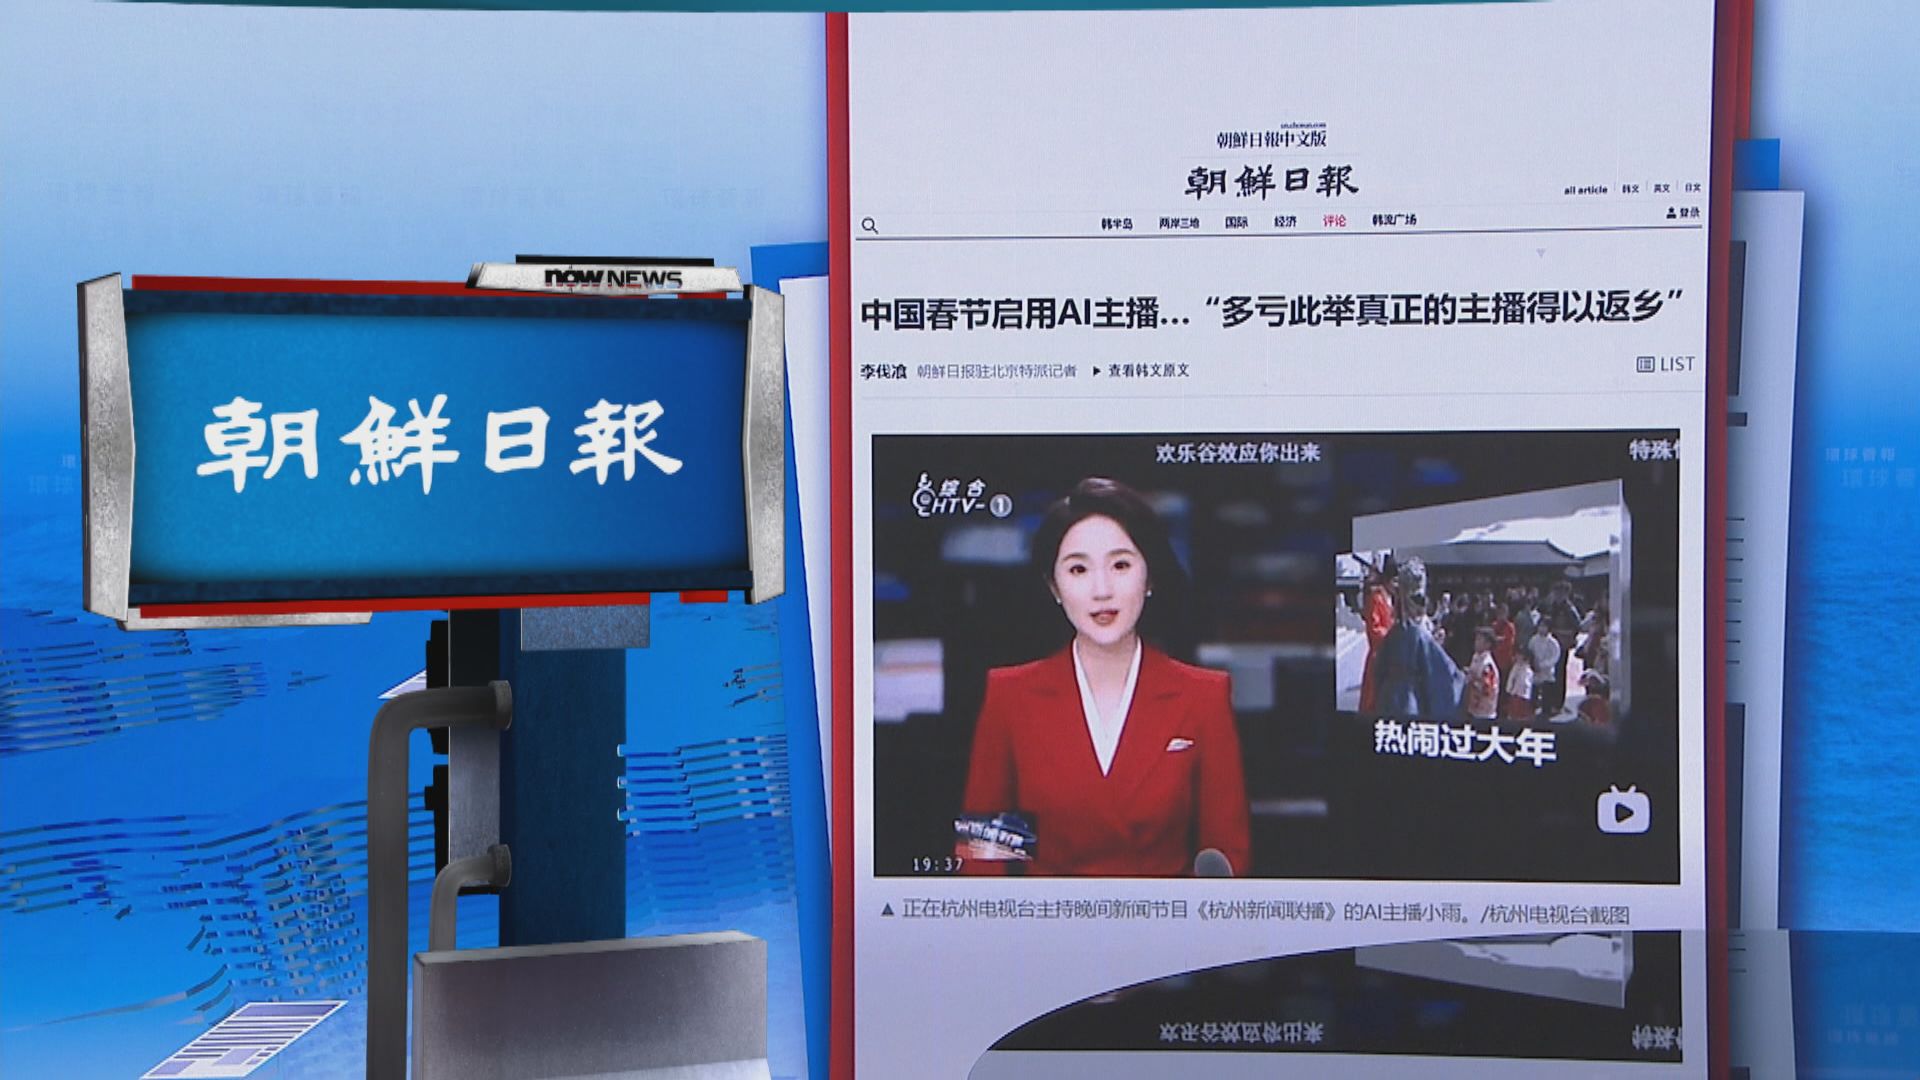 【環球薈報】杭州電視台春節推出AI主播 獨攬大旗主持新聞節目